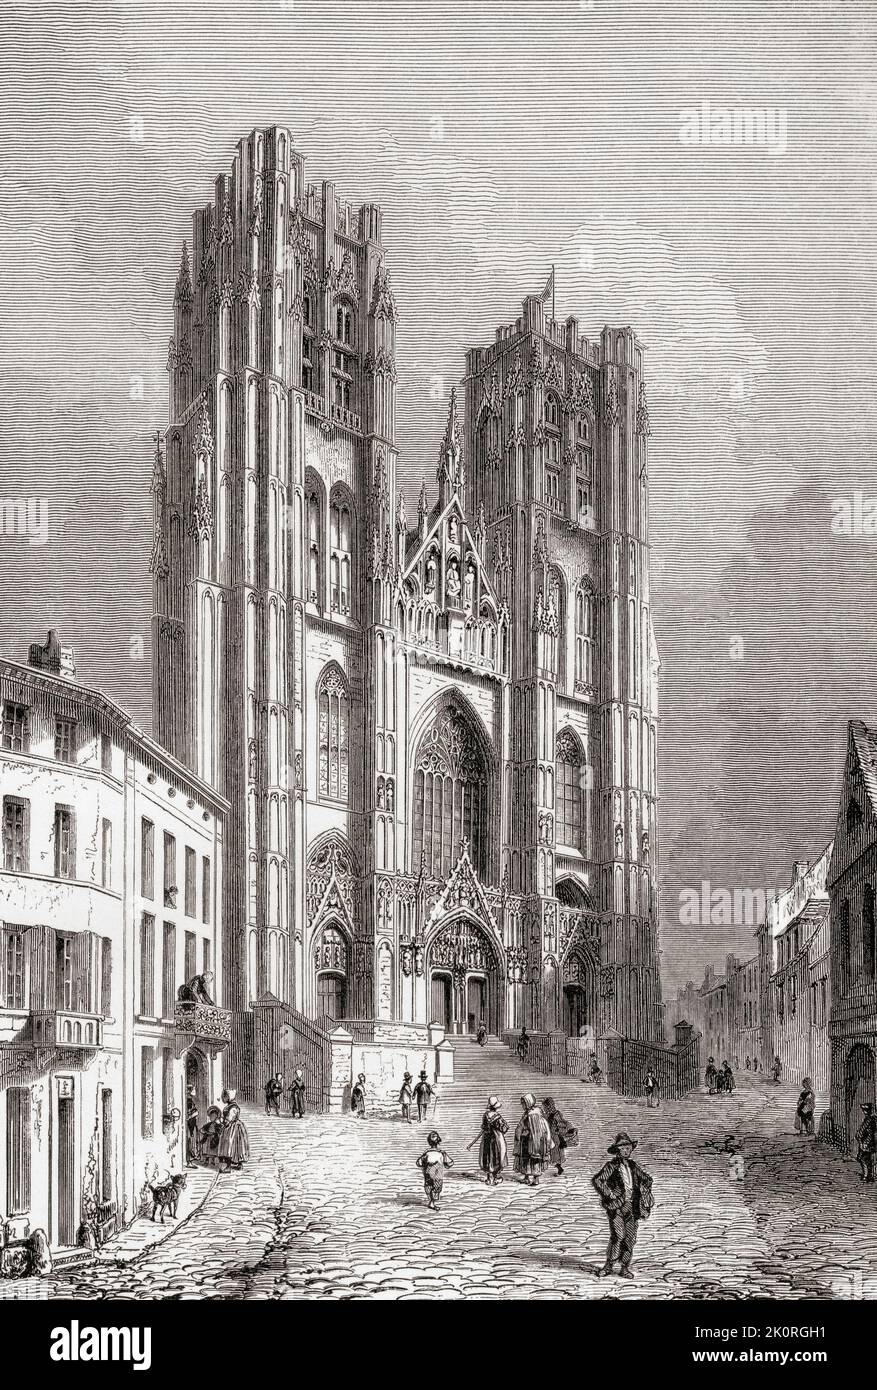 La Catedral de San Miguel y San Gudula, también conocida como Catedral de San Gudula o San Gudula, Bruselas, Bélgica, visto aquí en el siglo 19th. Construido en los siglos 11th - 15th es de estilo gótico y brabantino gótico arquitectónico. De Les Plus Belles Eglises du Monde, publicado en 1861. Foto de stock